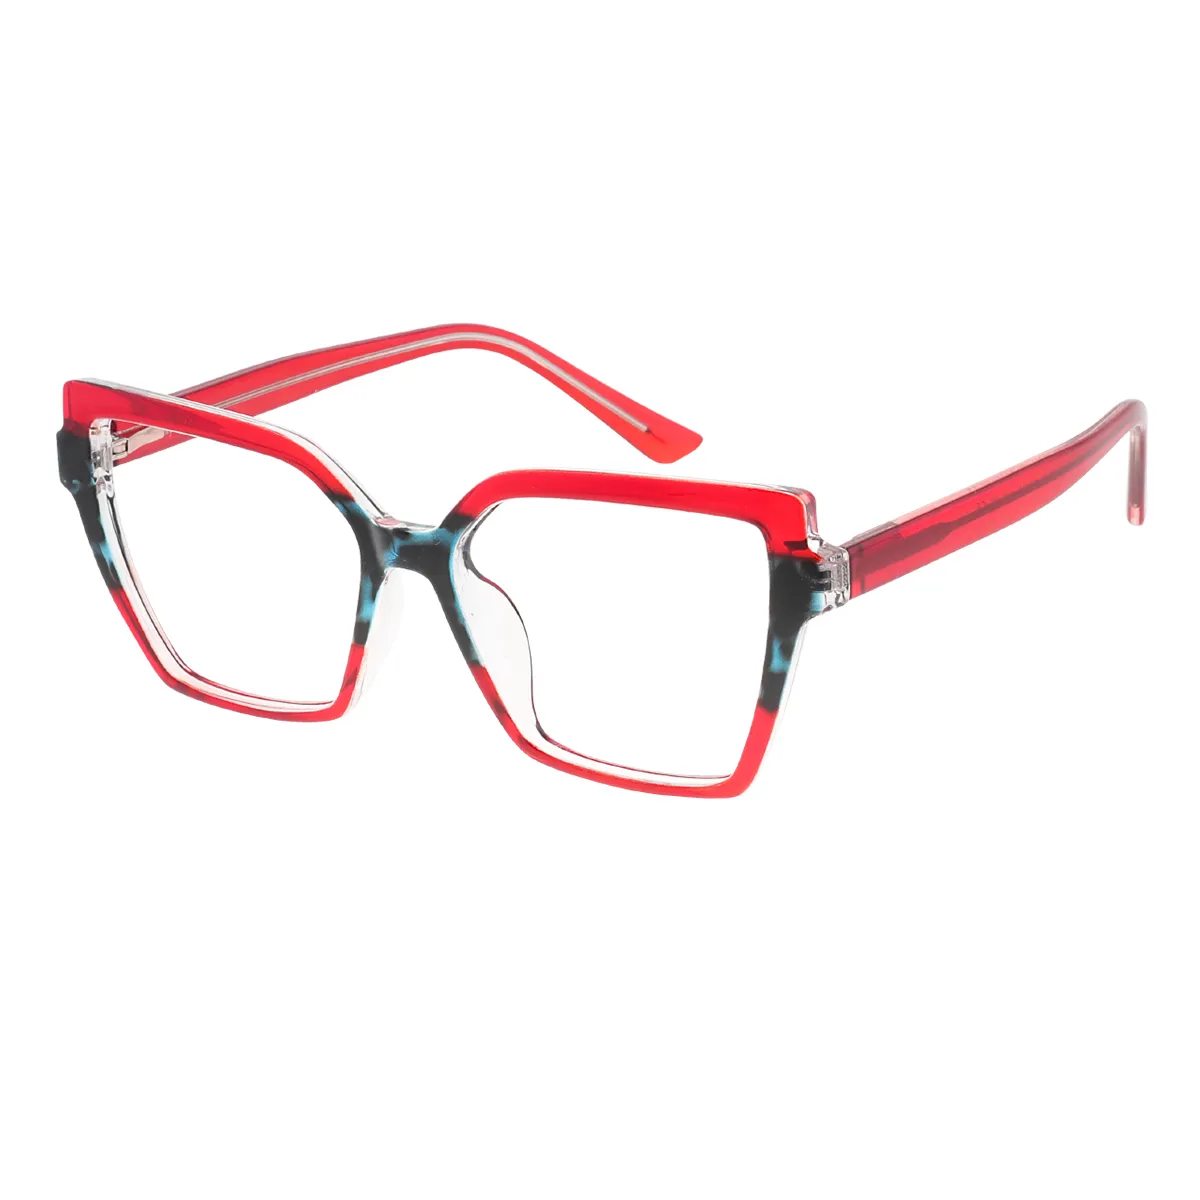 Elfreda - Square Red Glasses for Women